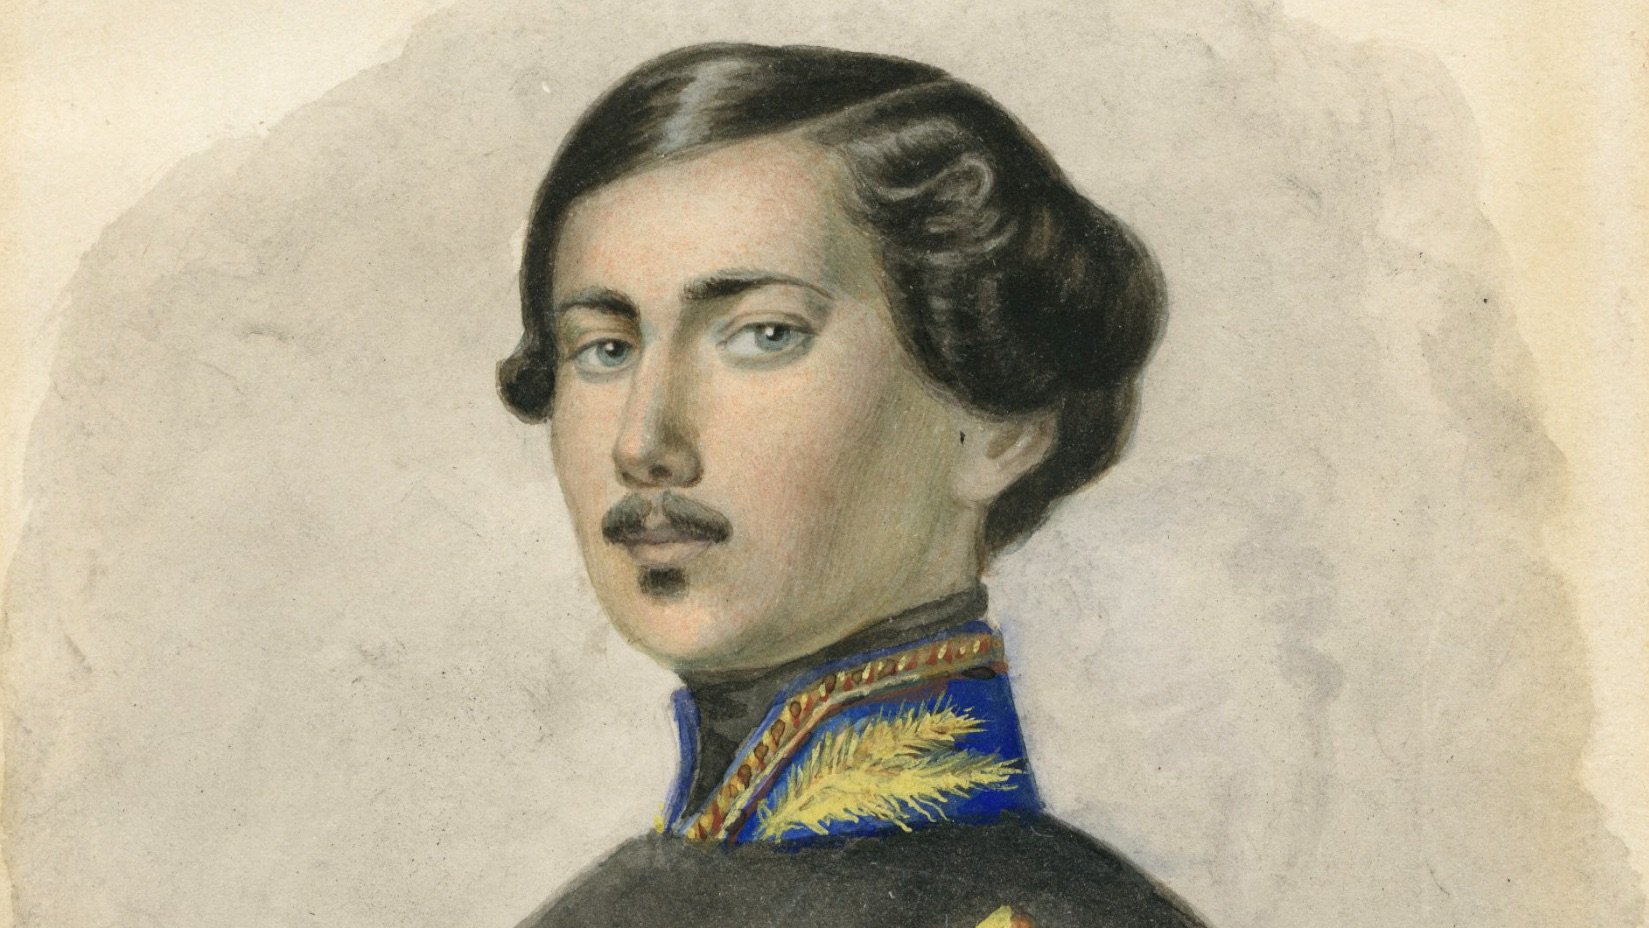   Peter Robert Berry I come giovane tenente durante la guerra del Sonderbund nel 1847  